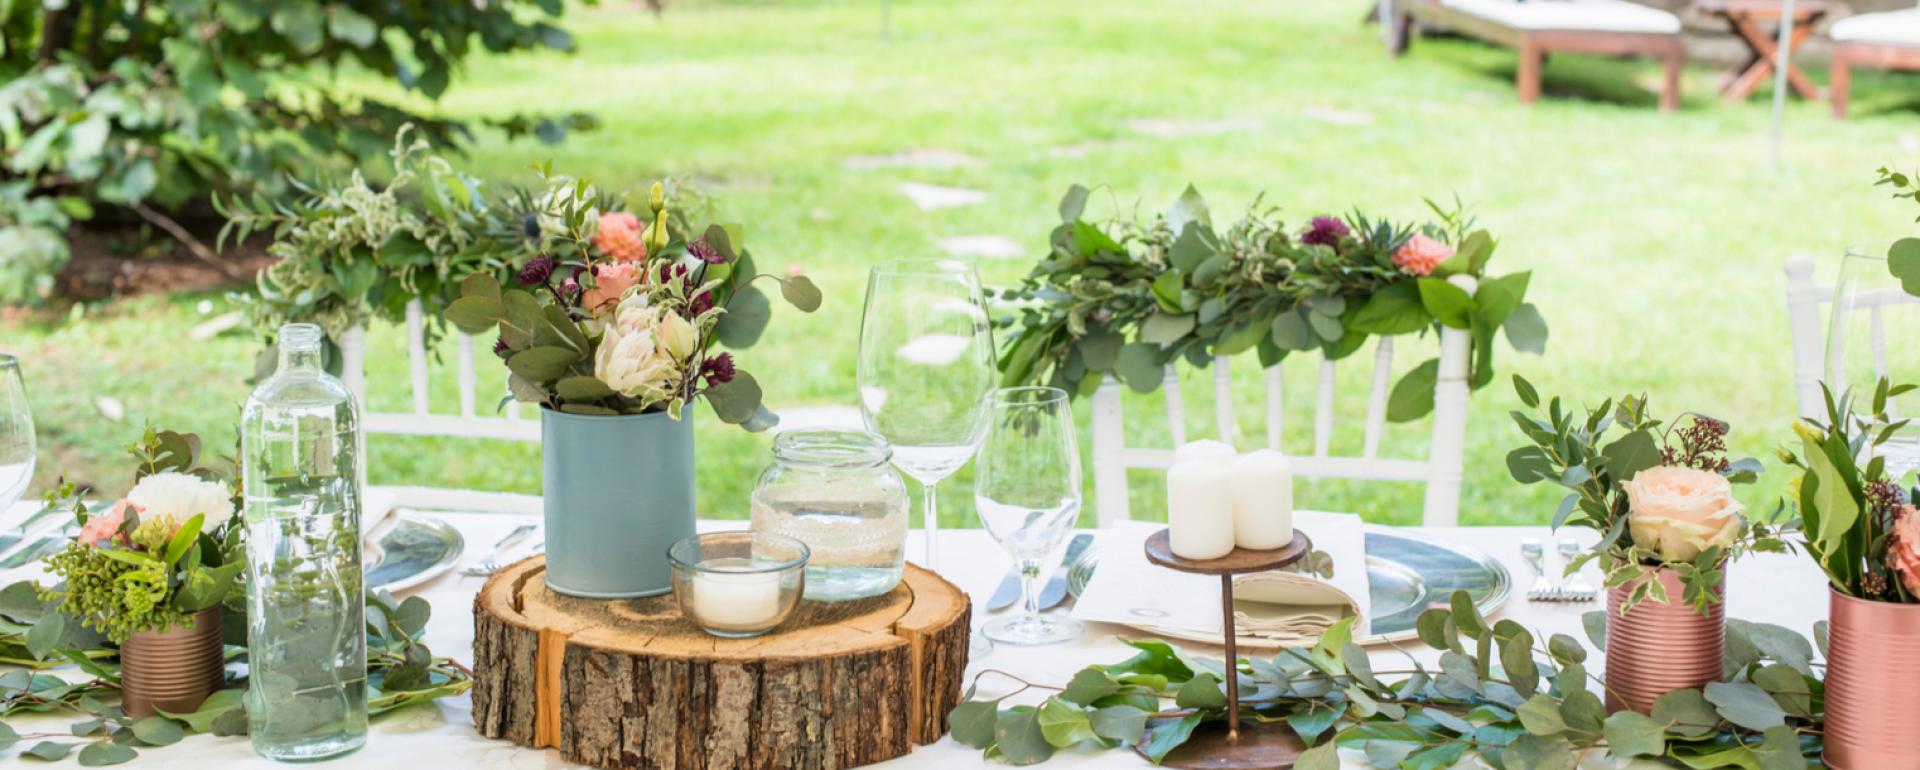 Piękny stół na garden party